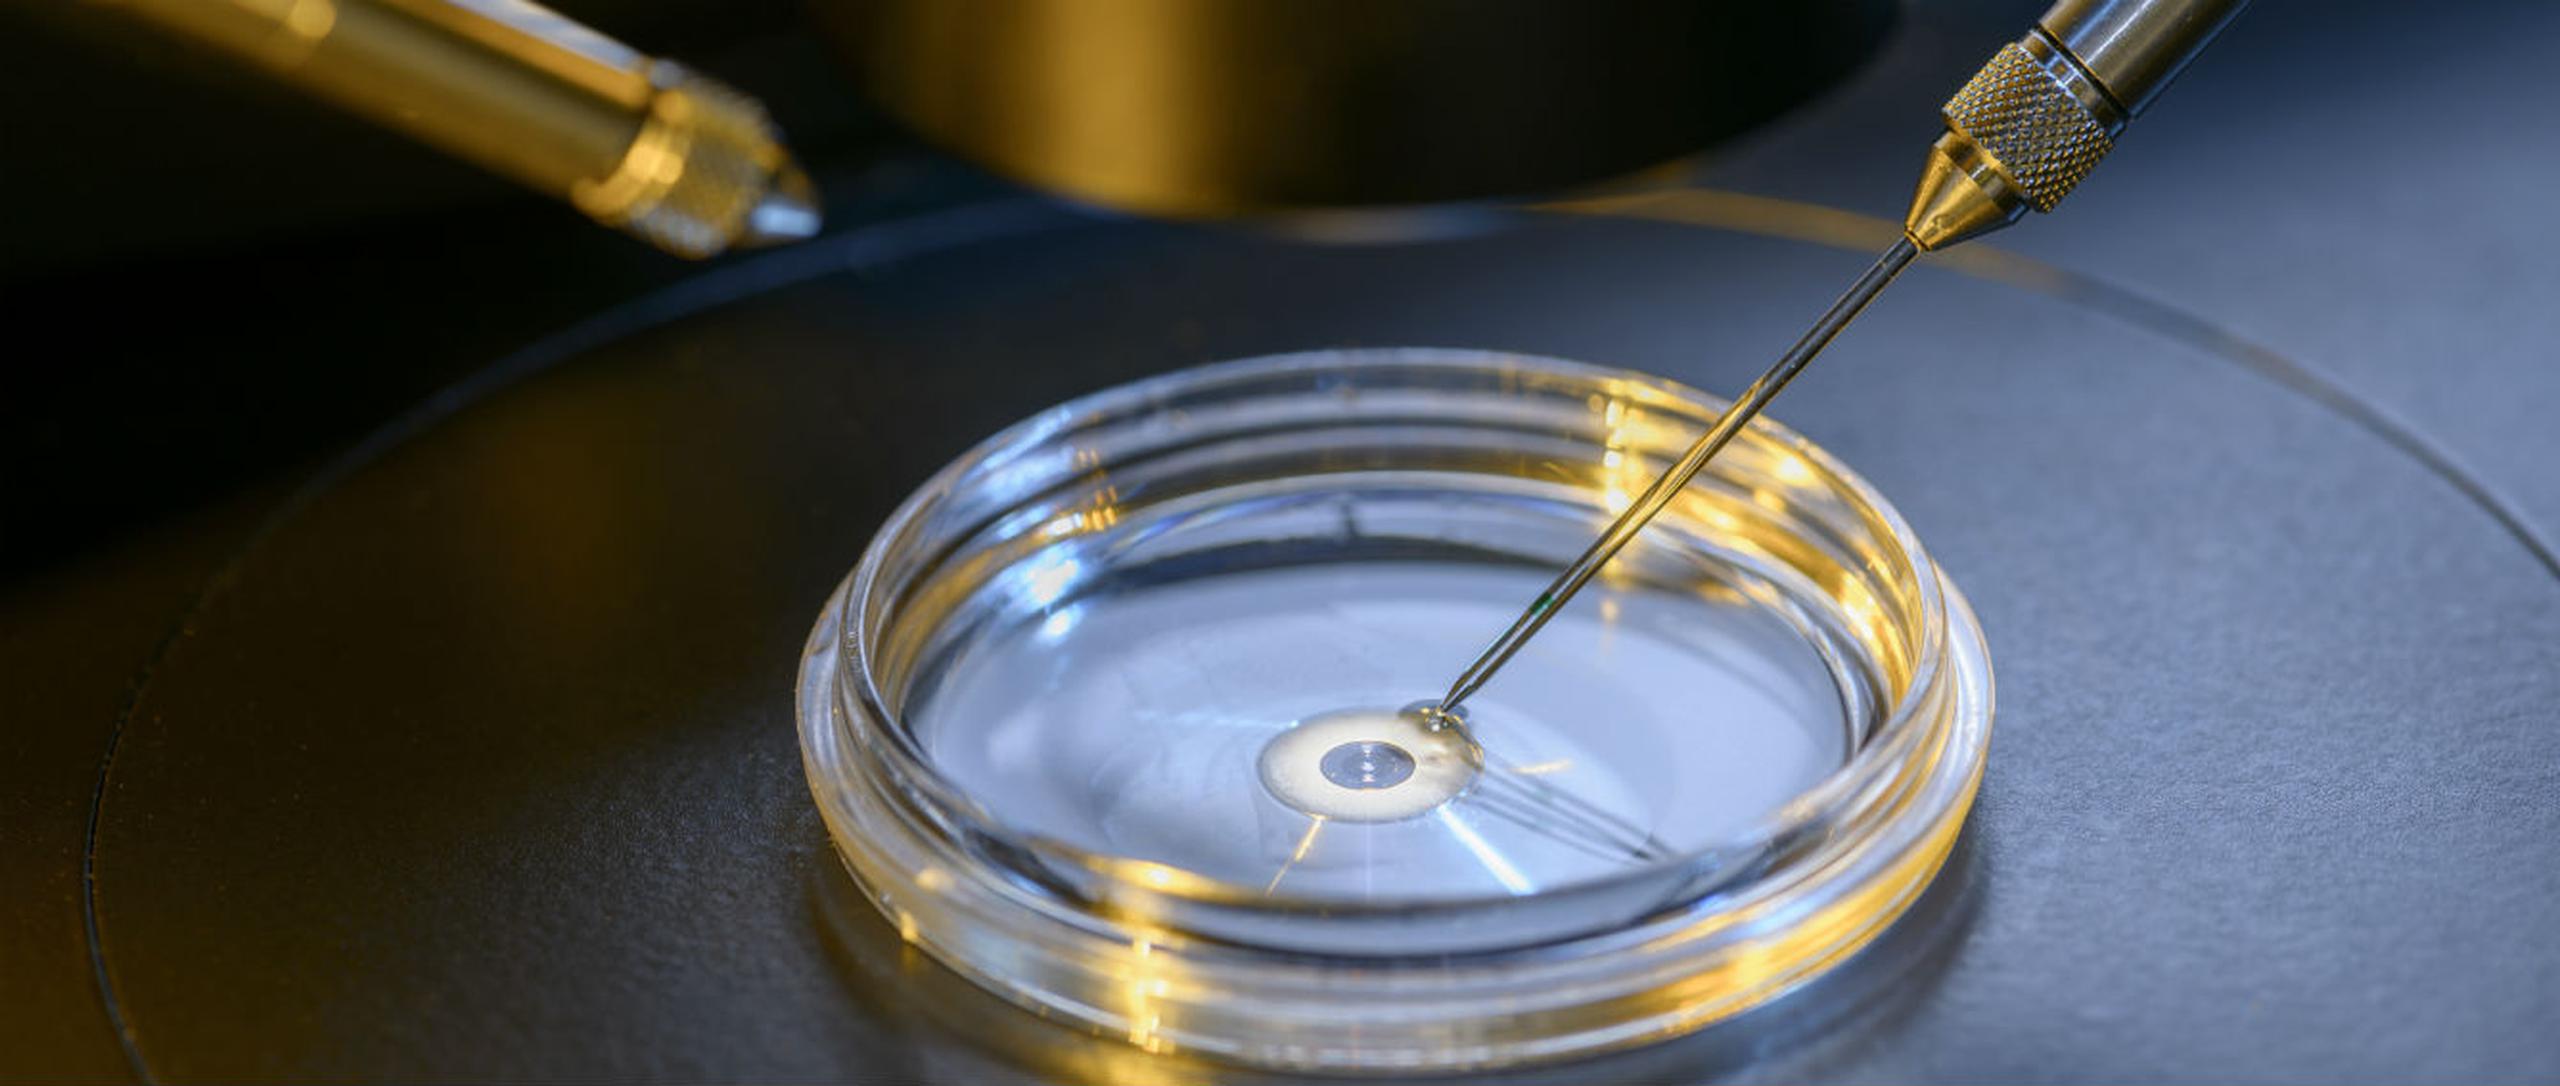 Este logro con embriones de ganado podría ayudar al desarrollo de la fecundación in vitro en humanos. (Shutterstock)